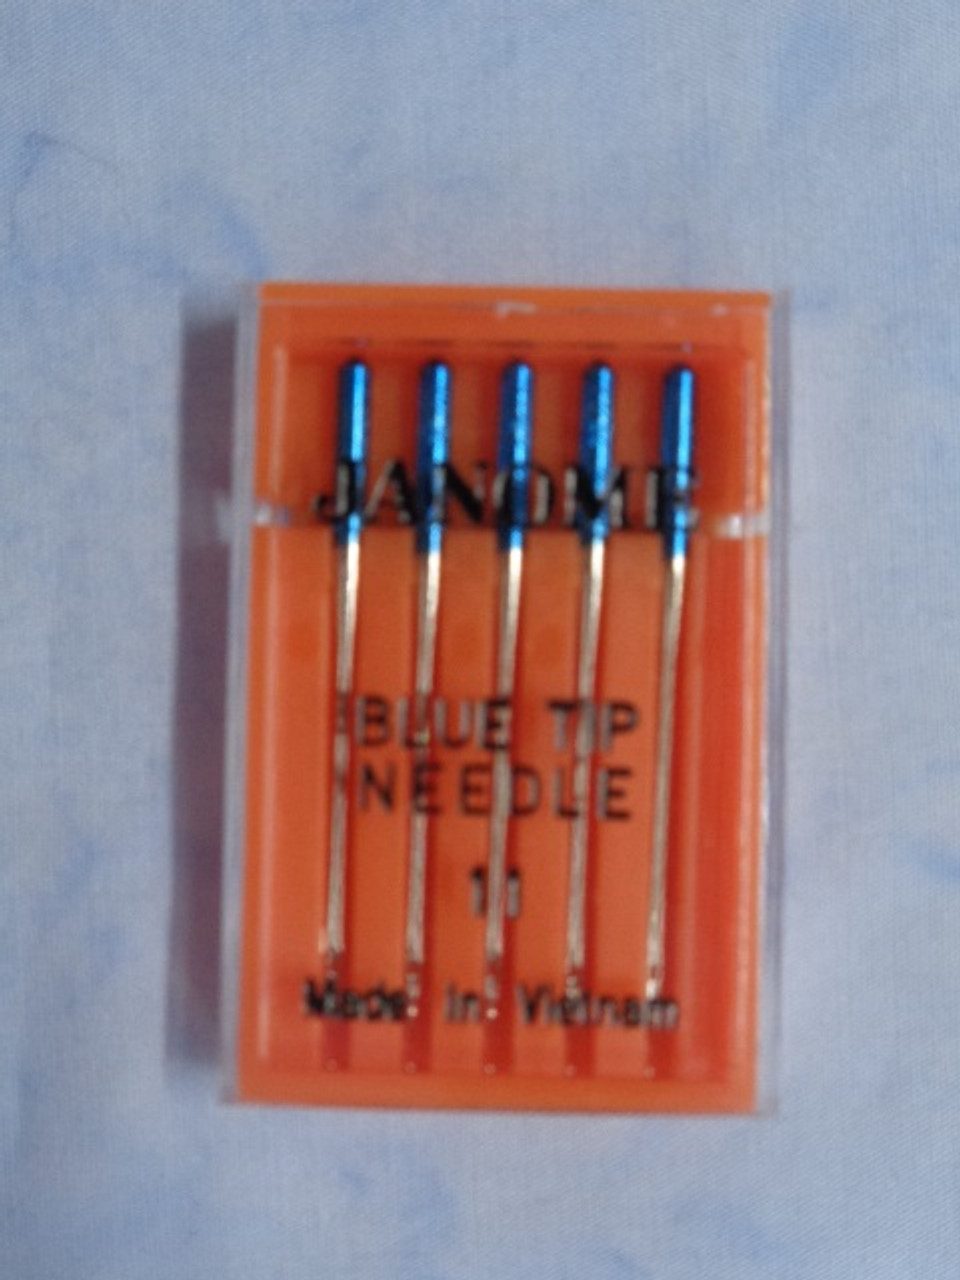 Janome Needle Blue Tip 11 - Sew Many Stitches